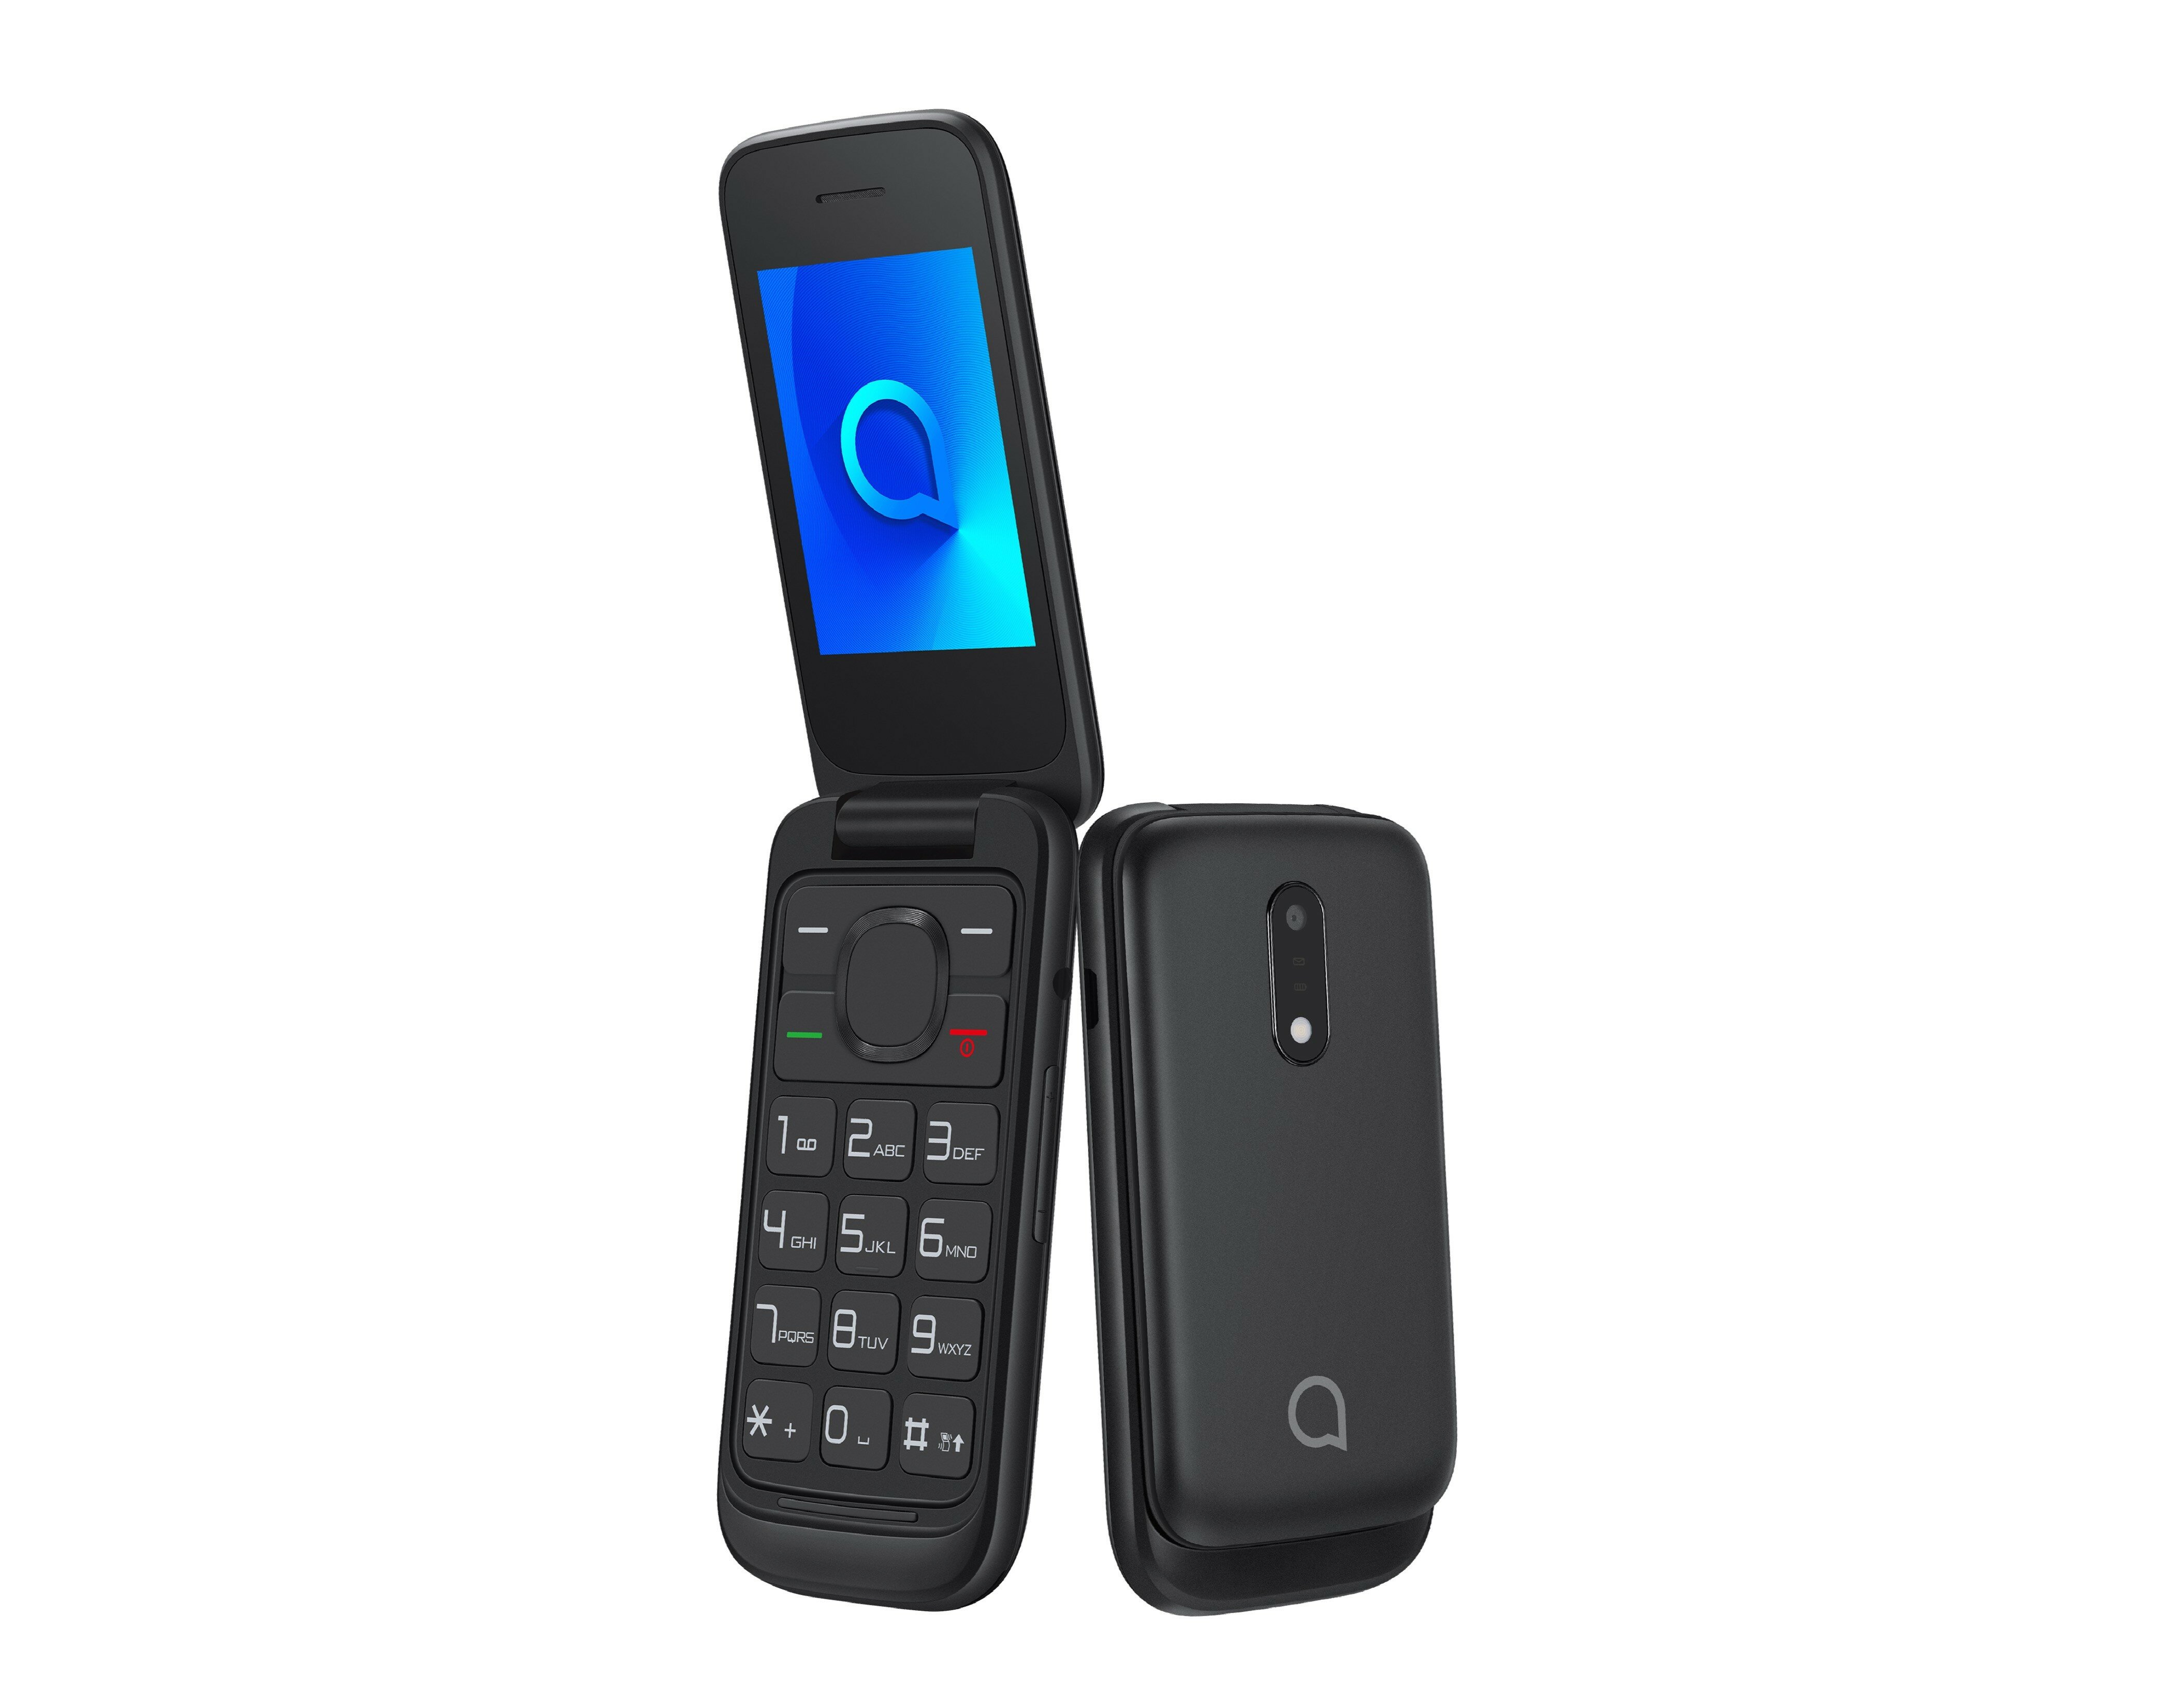 Telefon Alcatel 2053 [2053X] czarny widok pod kątem na telefon z otwartą i zamkniętą klapką